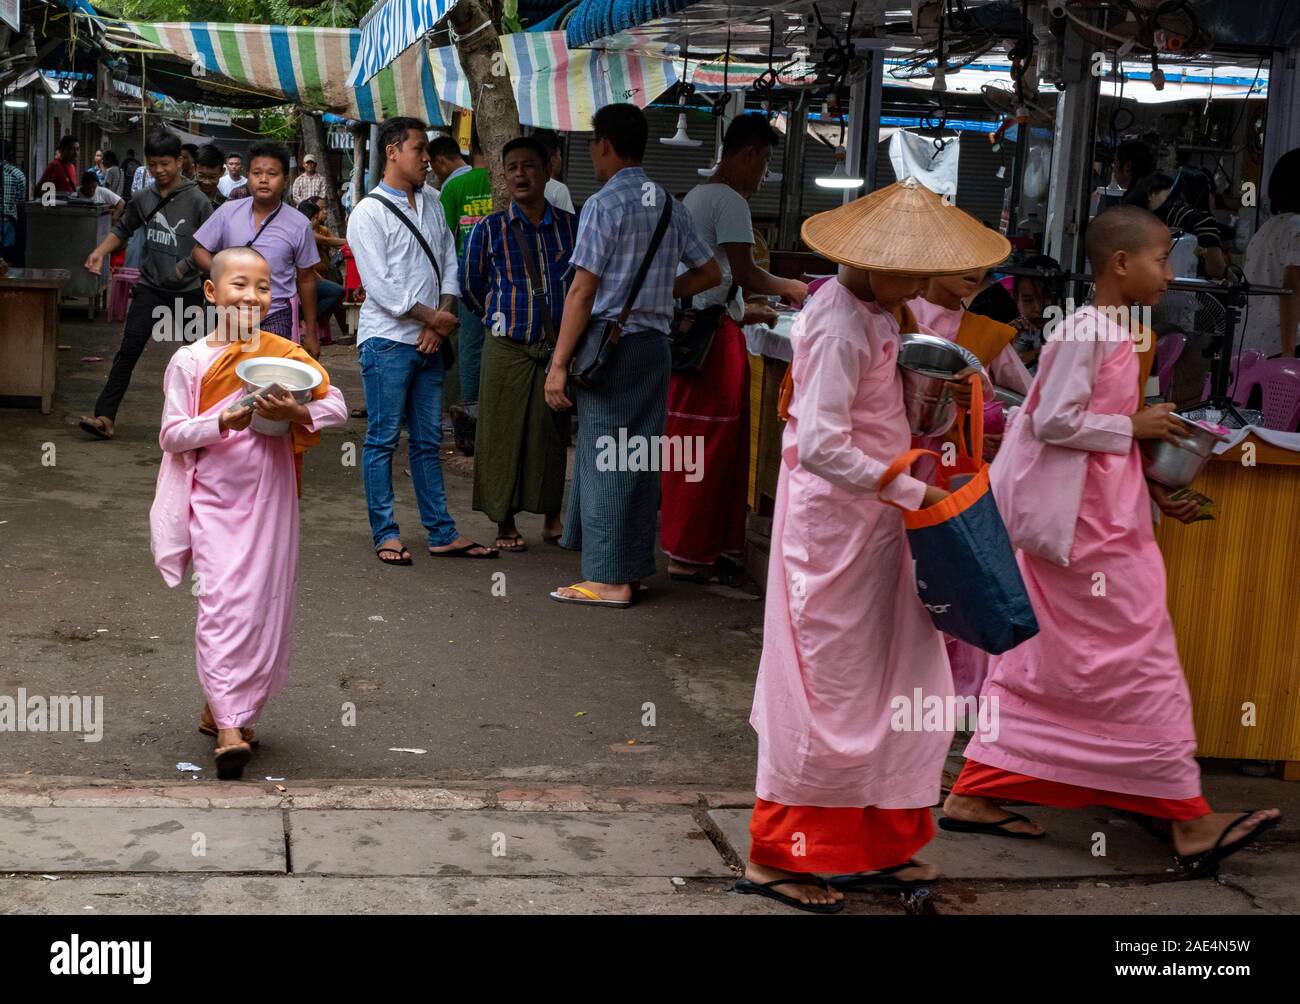 Le monache buddiste passano attraverso un mercato con le loro elemosine bocce in cerca di donazioni durante un giorno santo in Mandalay, Myanmar (Birmania) Foto Stock